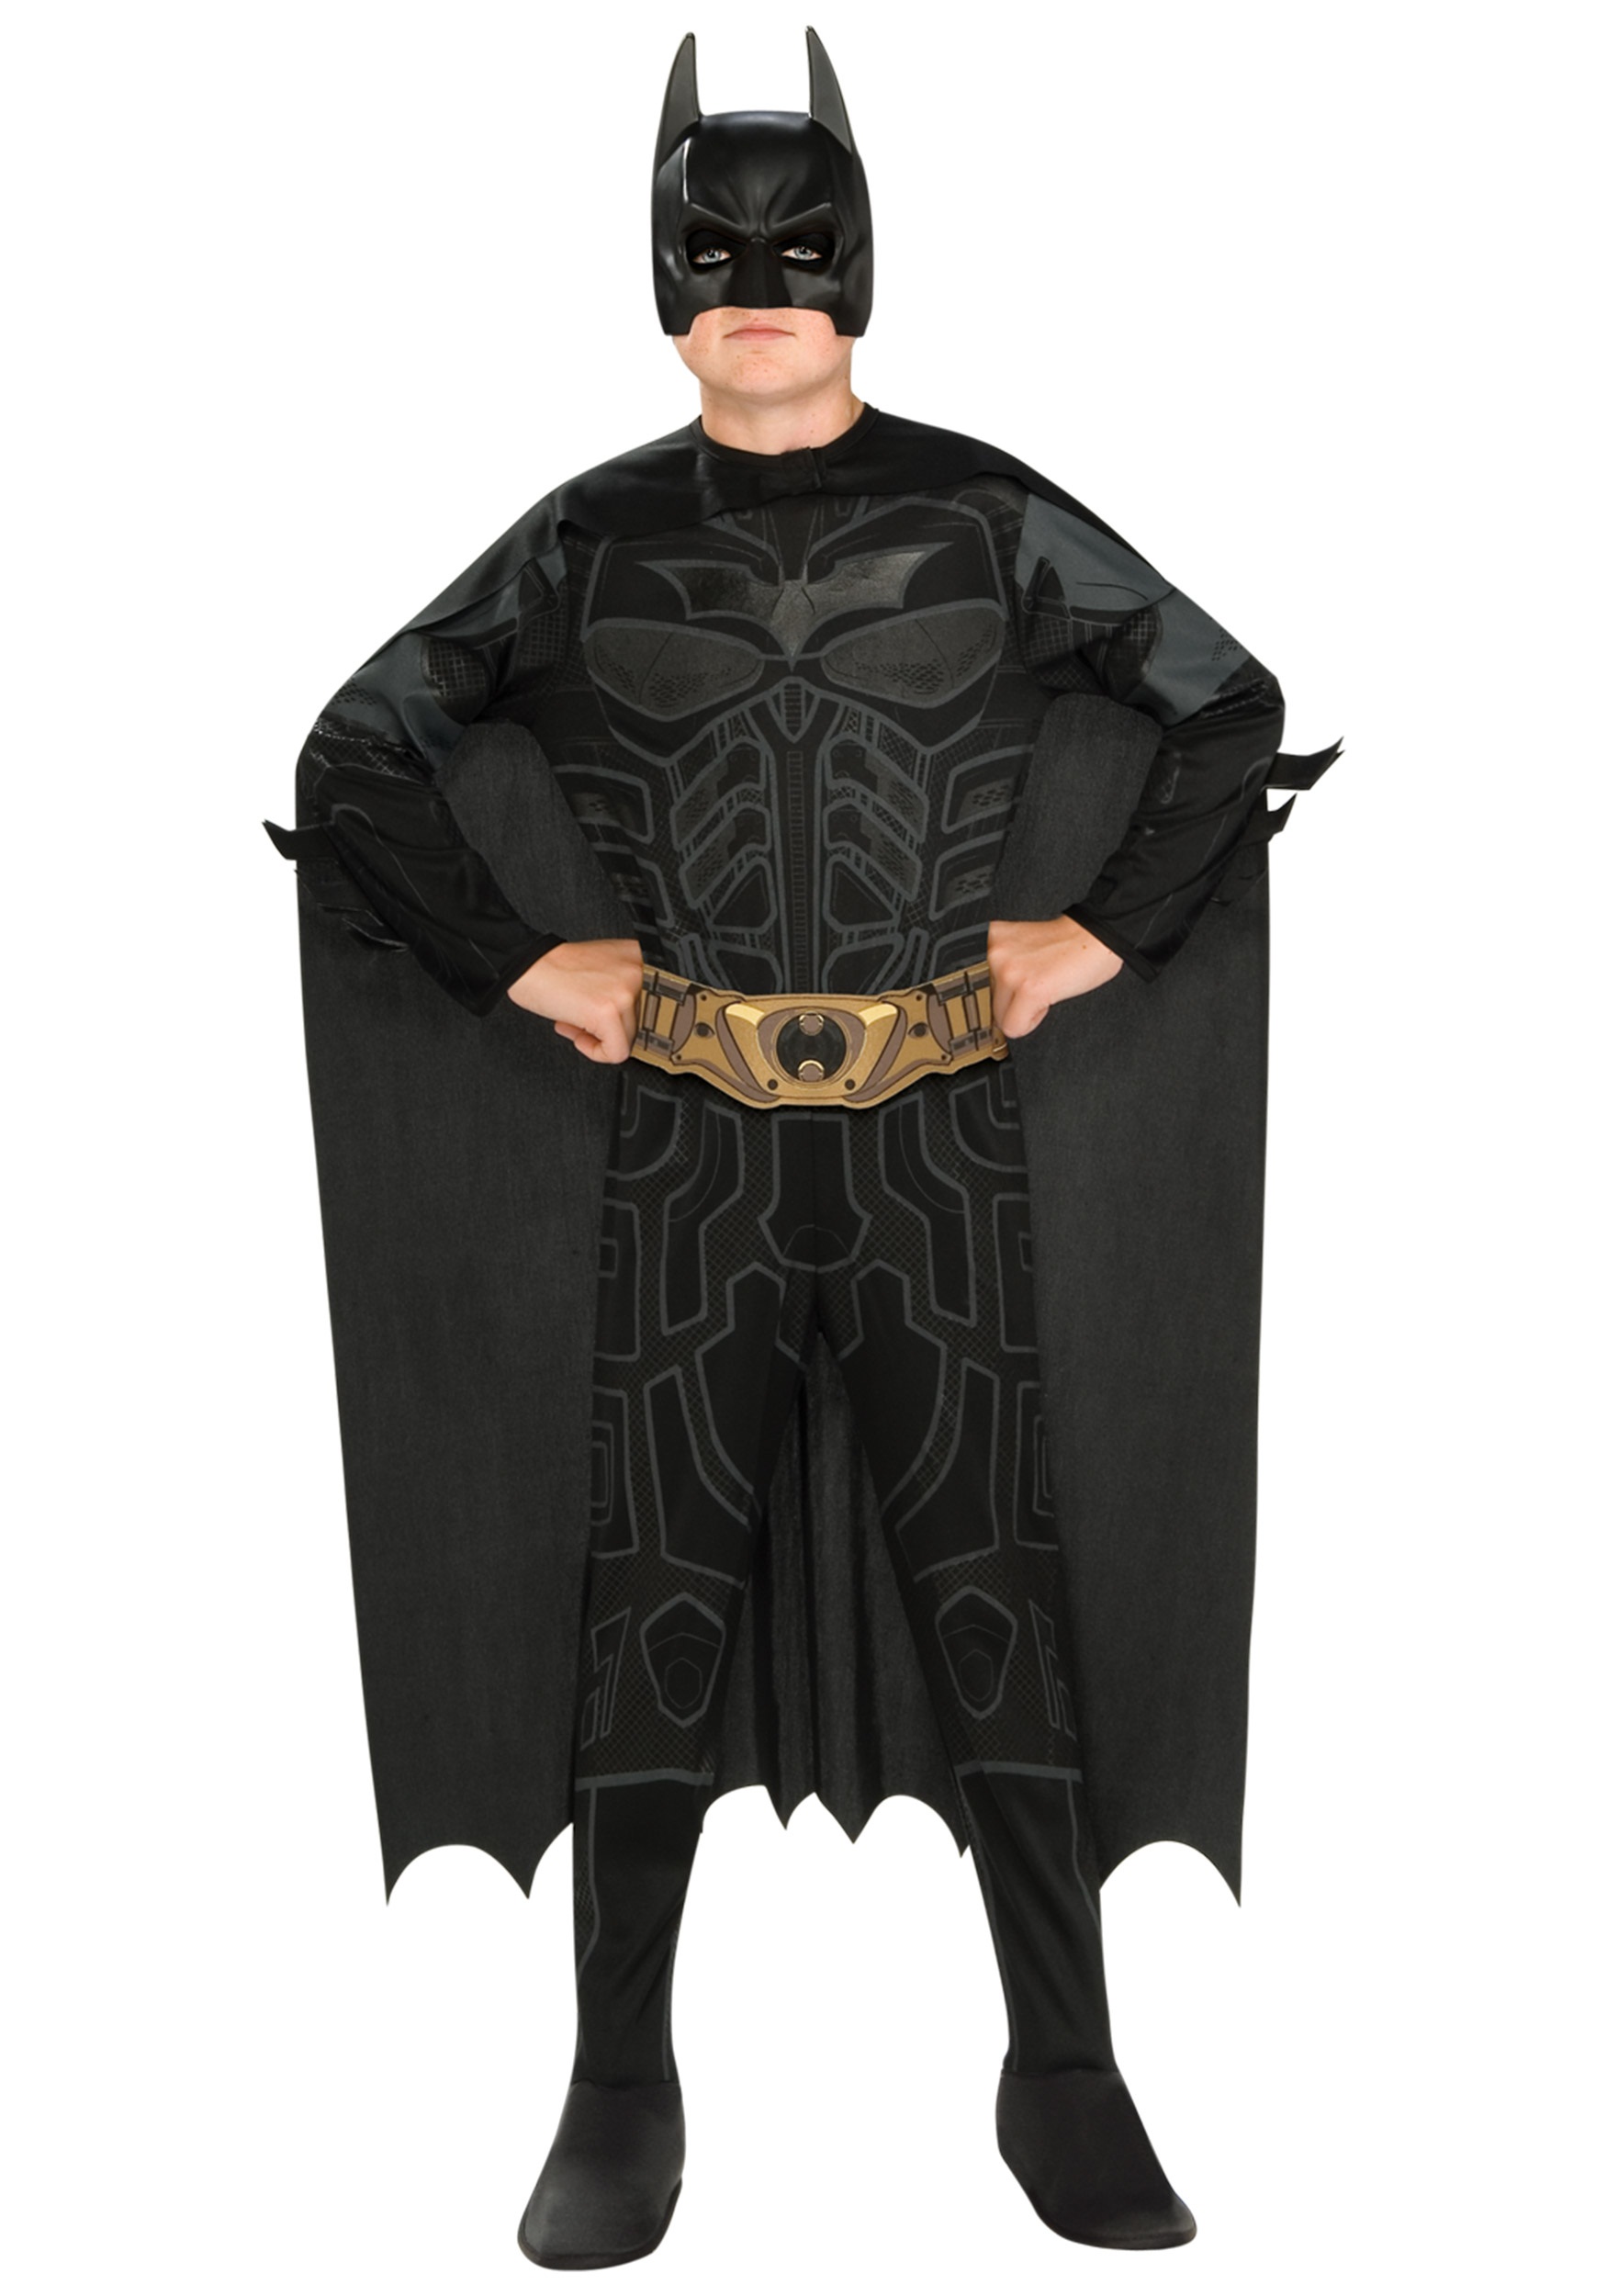 Batman цена. Костюм Бэтмен (плащ и маска) детский. Тёмный рыцарь костюм Бэтмена. Костюм карнавальный Rubies Batman g34095. Костюмы Бэтмен Бэтмен.